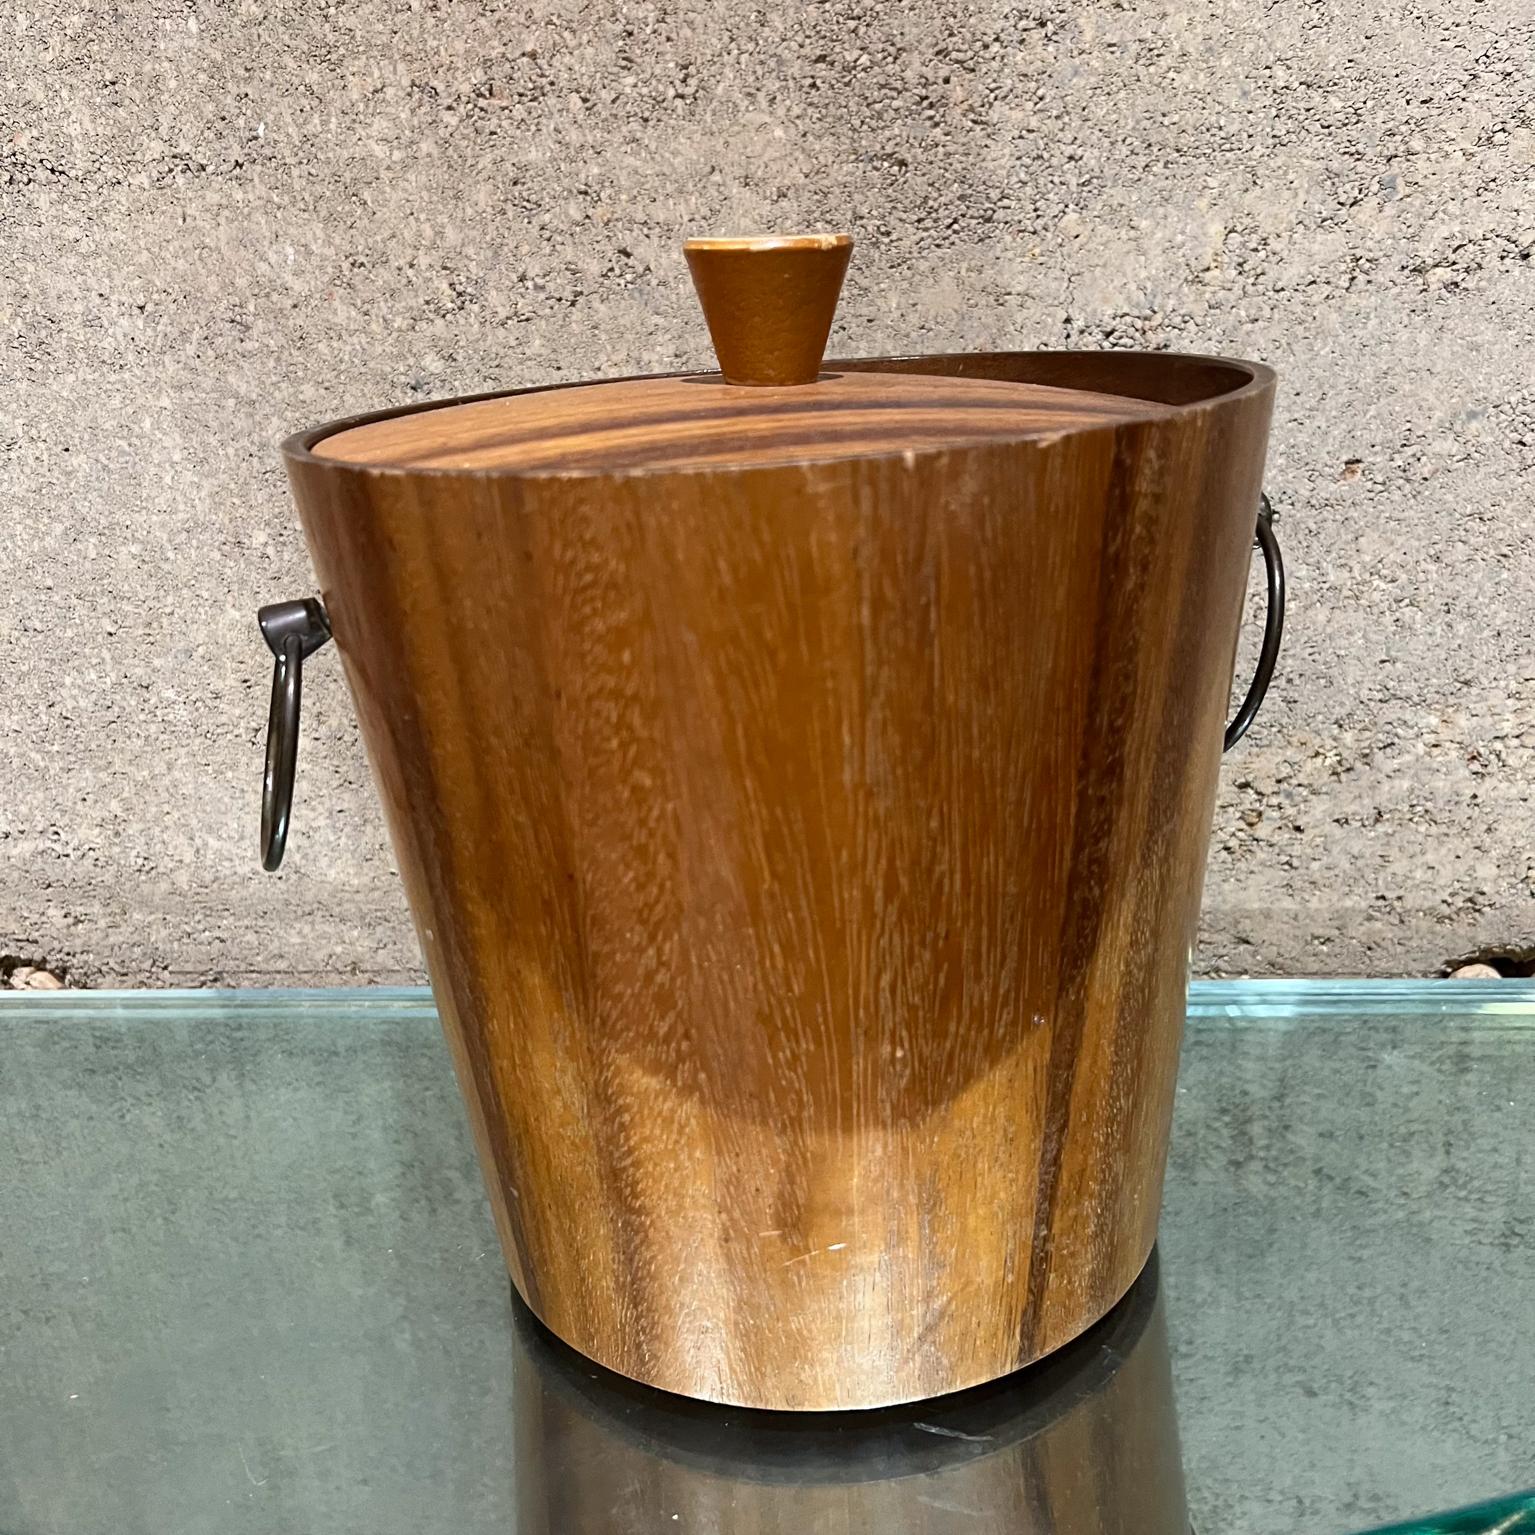 1960s KMC Barware vintage ice bucket teak wood Sensationnel Japanese Vintage modern ice bucket   
État original vintage non restauré. 
Estampillé en dessous de KMC 
9,5 h x 8 diamètre
Des rayures sont visibles.
Se référer à toutes les images